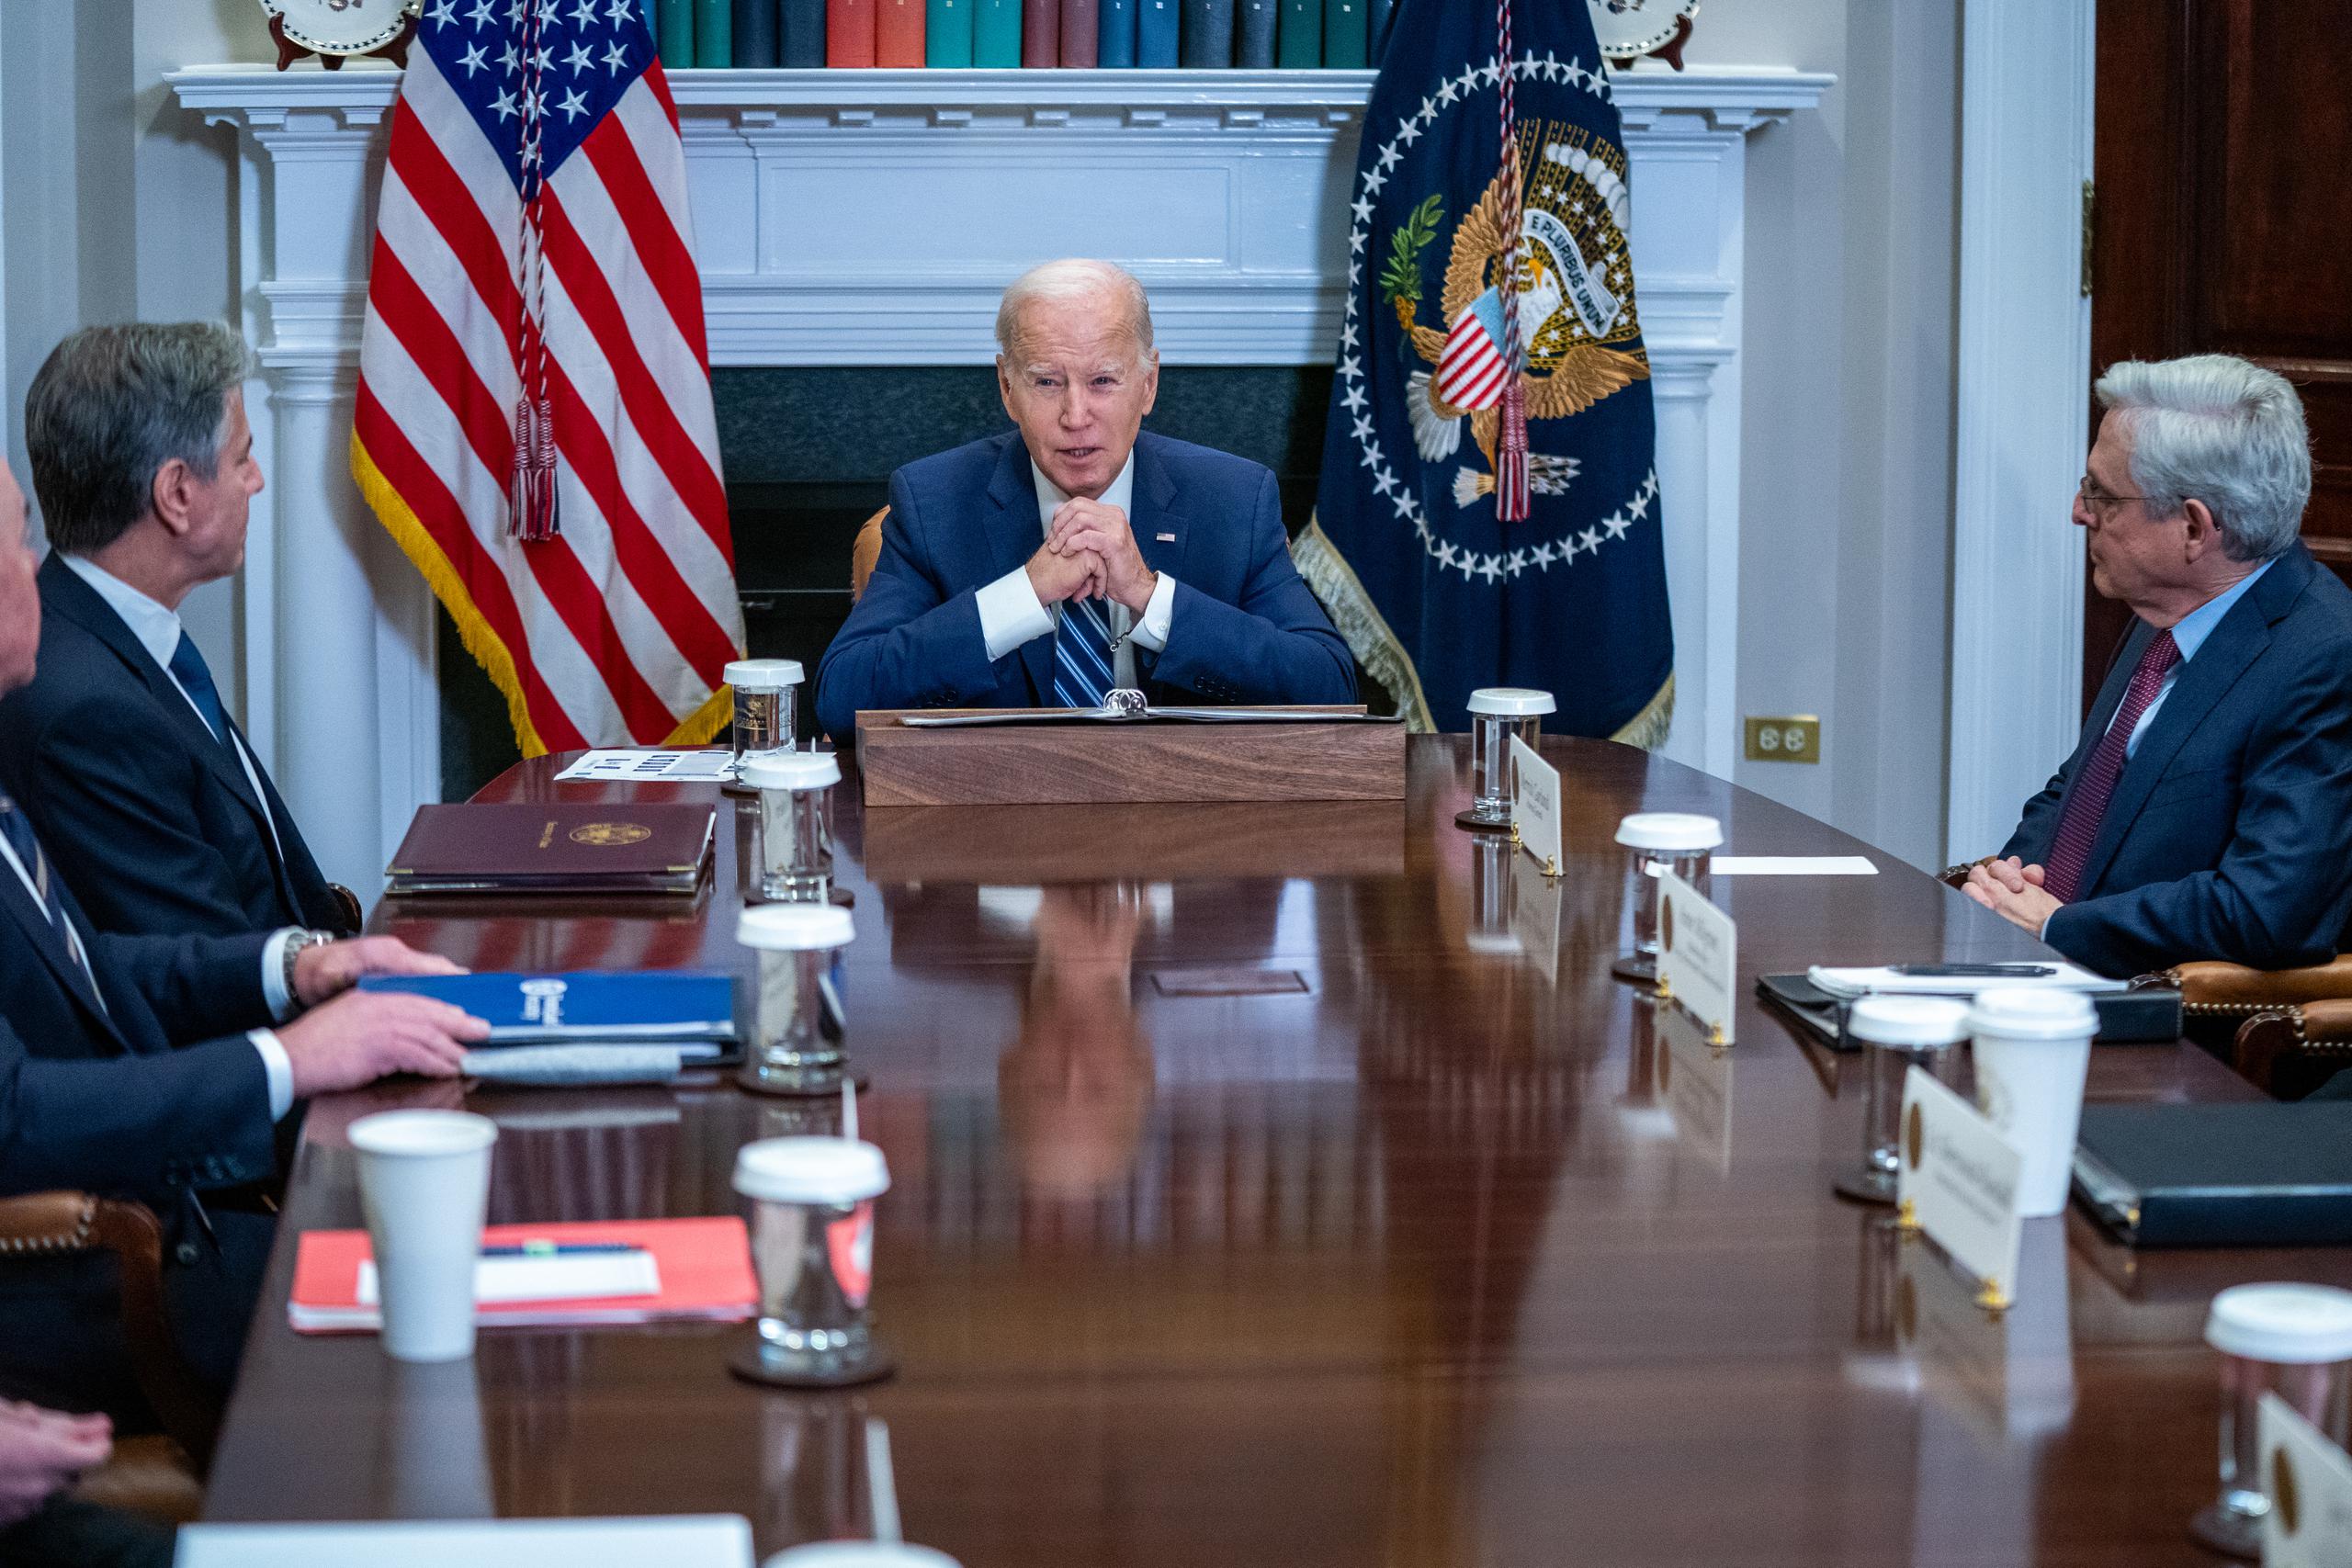 Biden afirmó que la operación iniciada hoy "ha sido producto de mucho trabajo duro y semanas de compromiso personal".